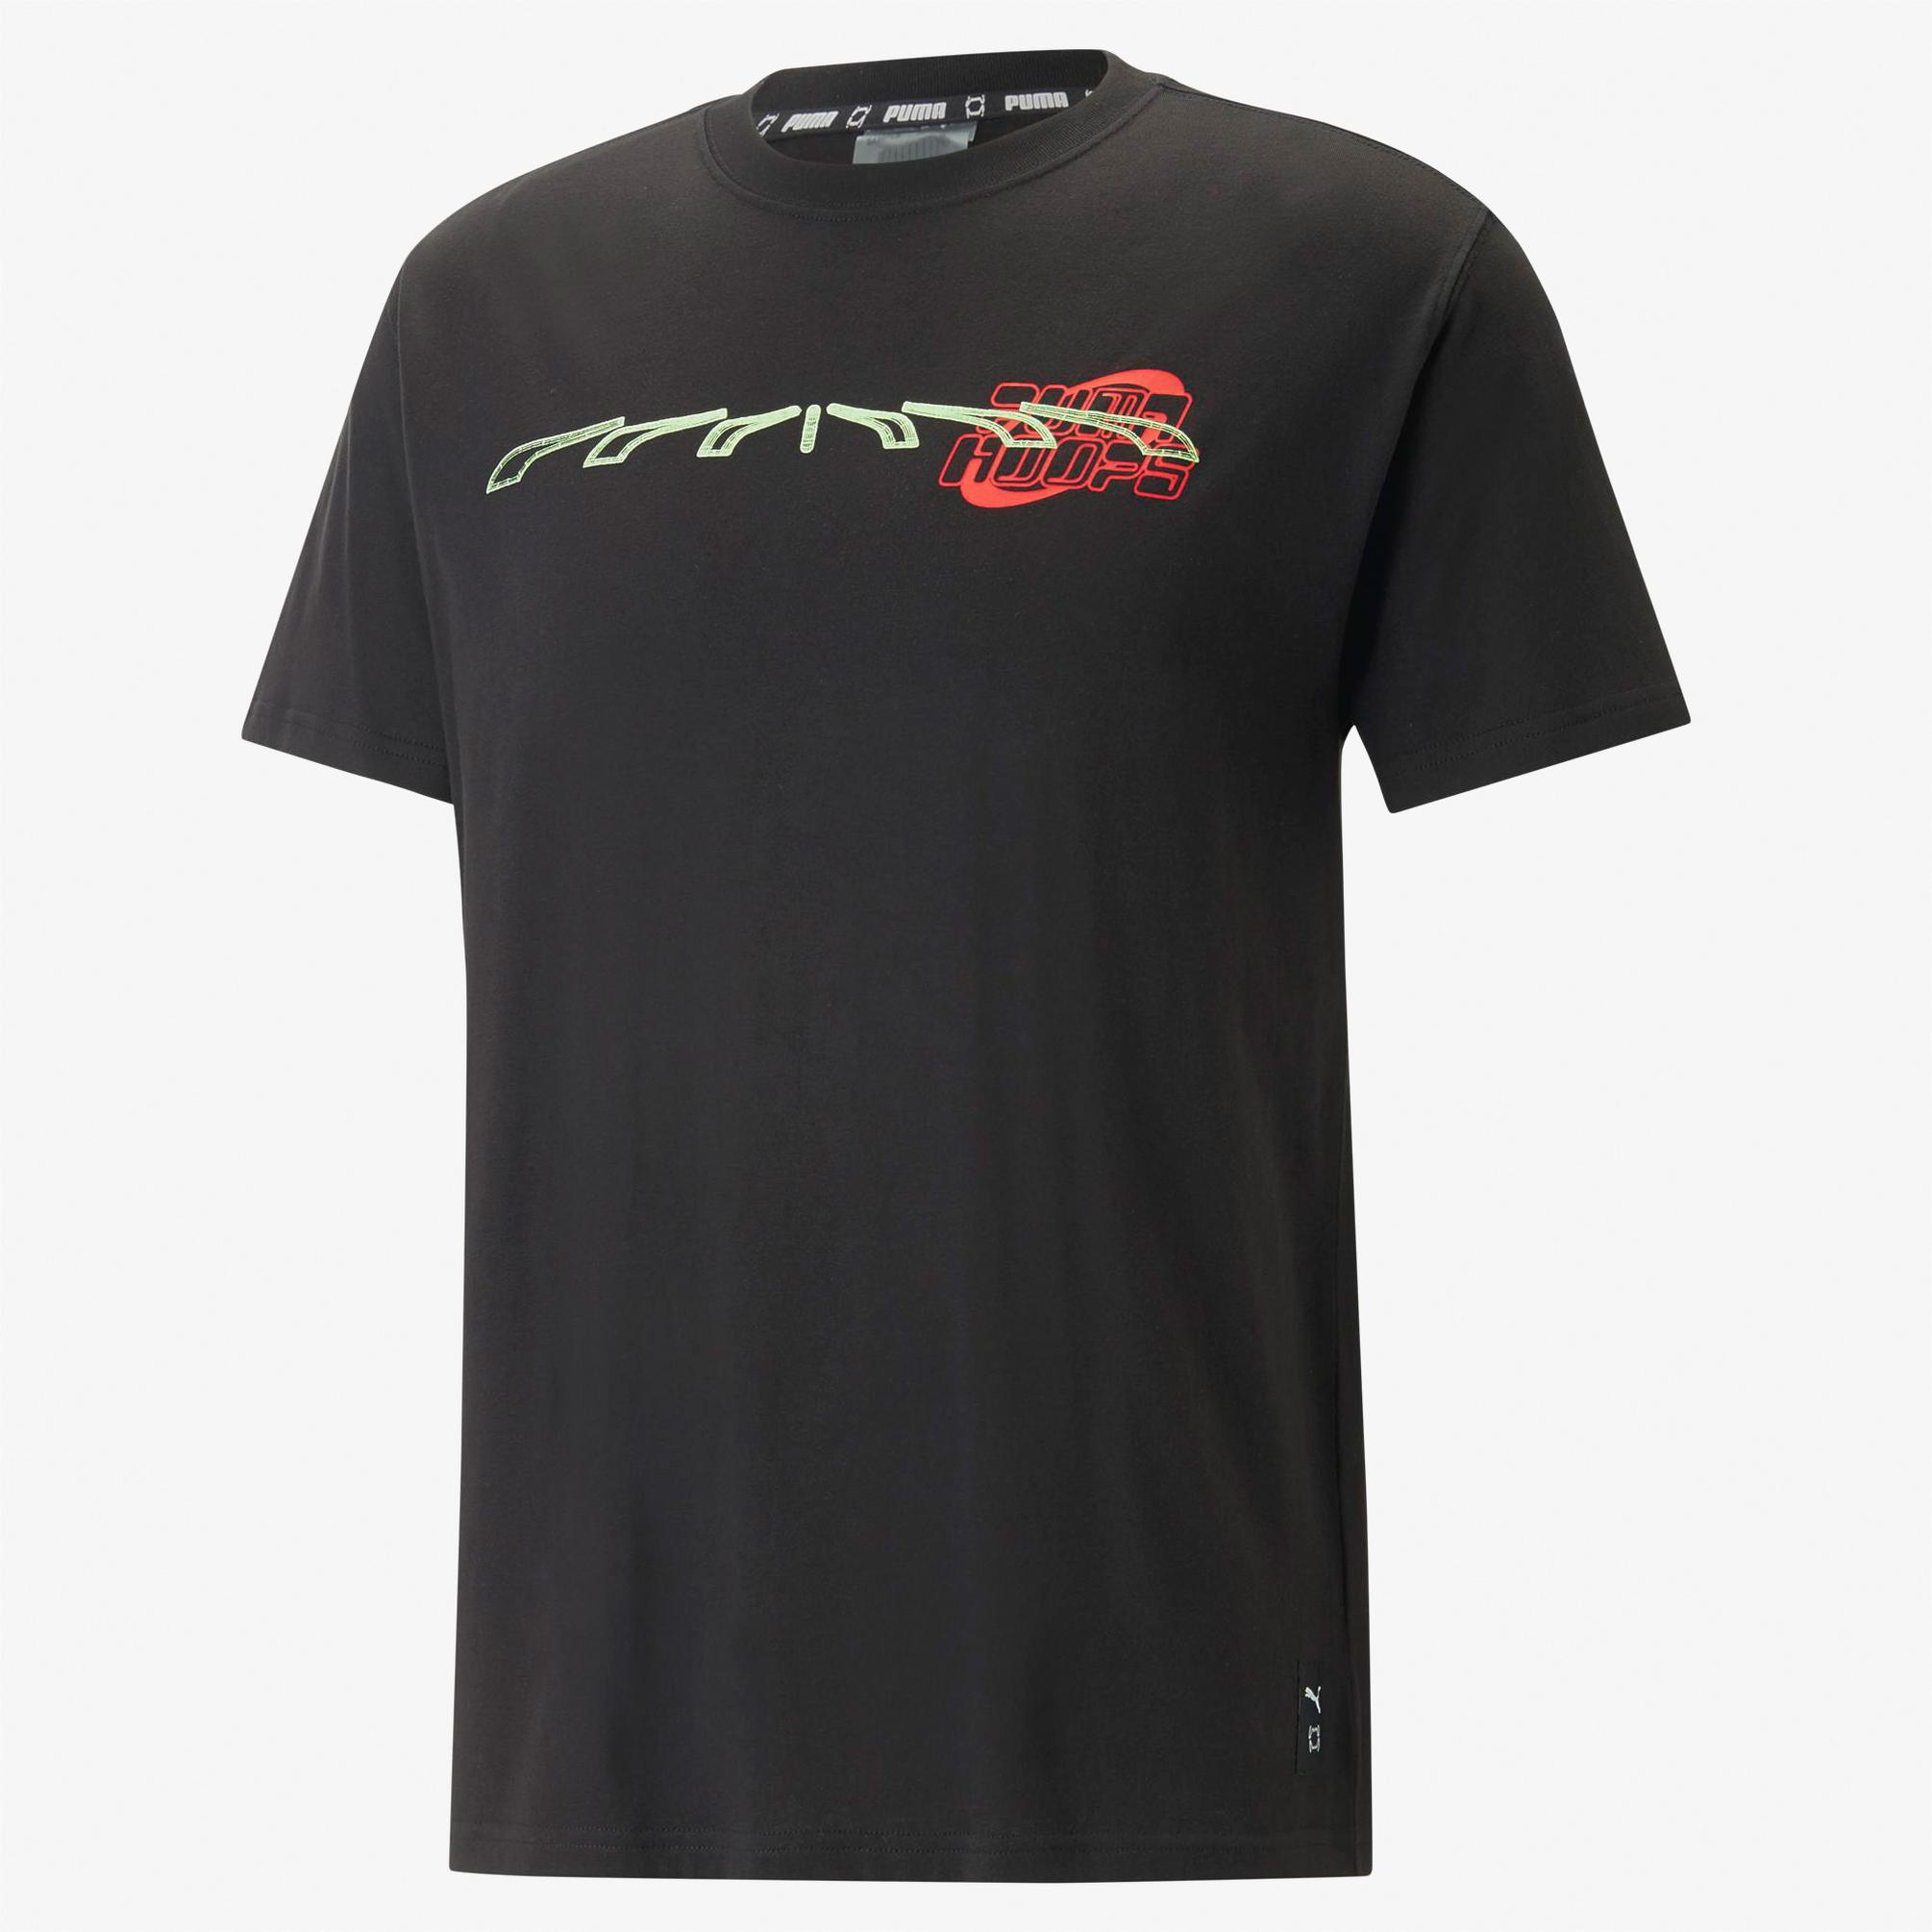  Puma New Era Erkek Siyah T-Shirt